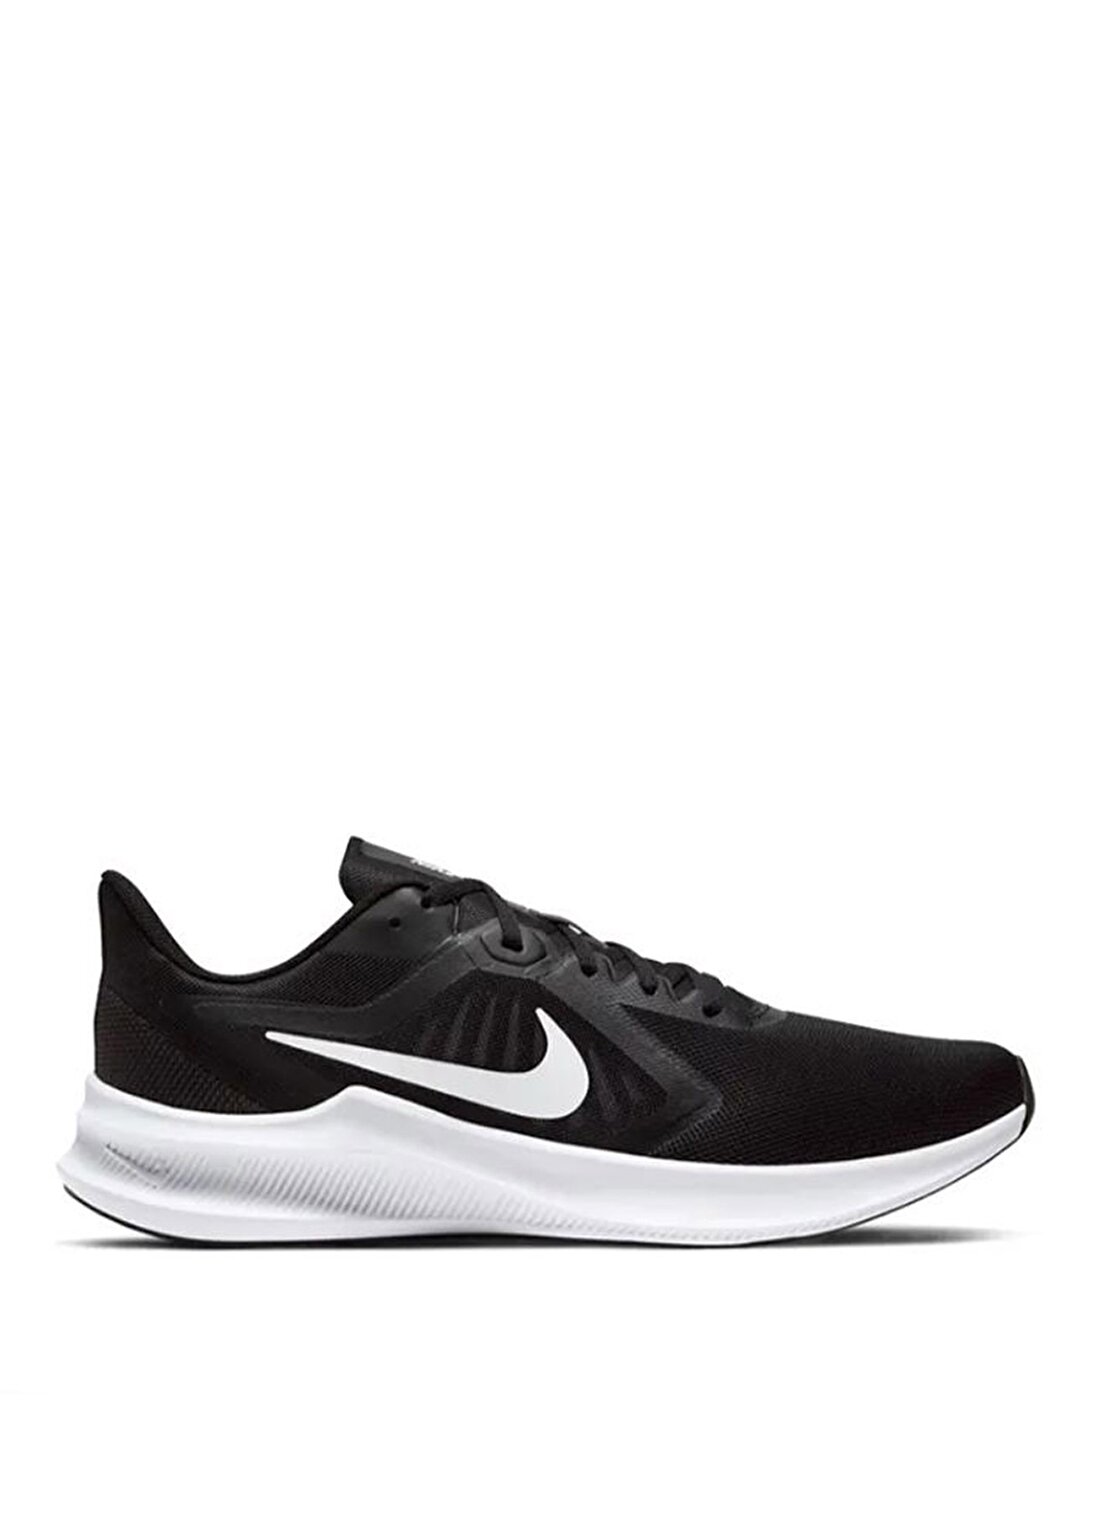 Nike Downshifter 10 Erkek Koşu Ayakkabısı